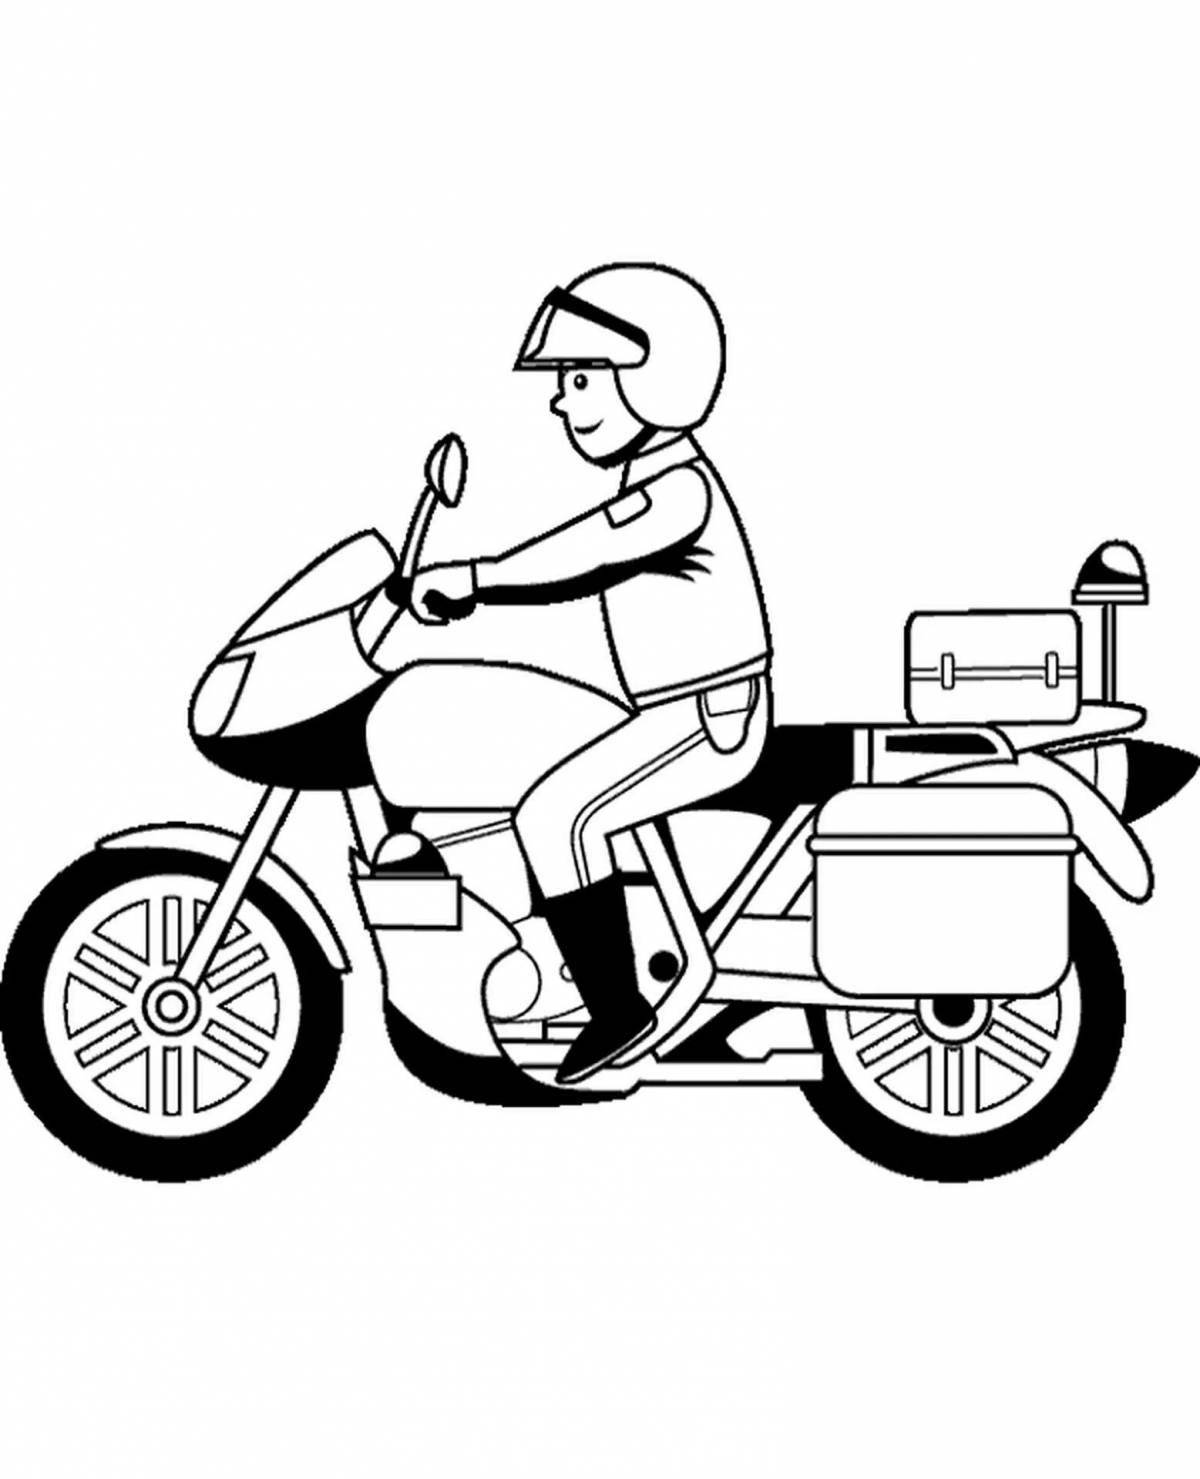 Раскраска дерзкая мотоциклетная полиция